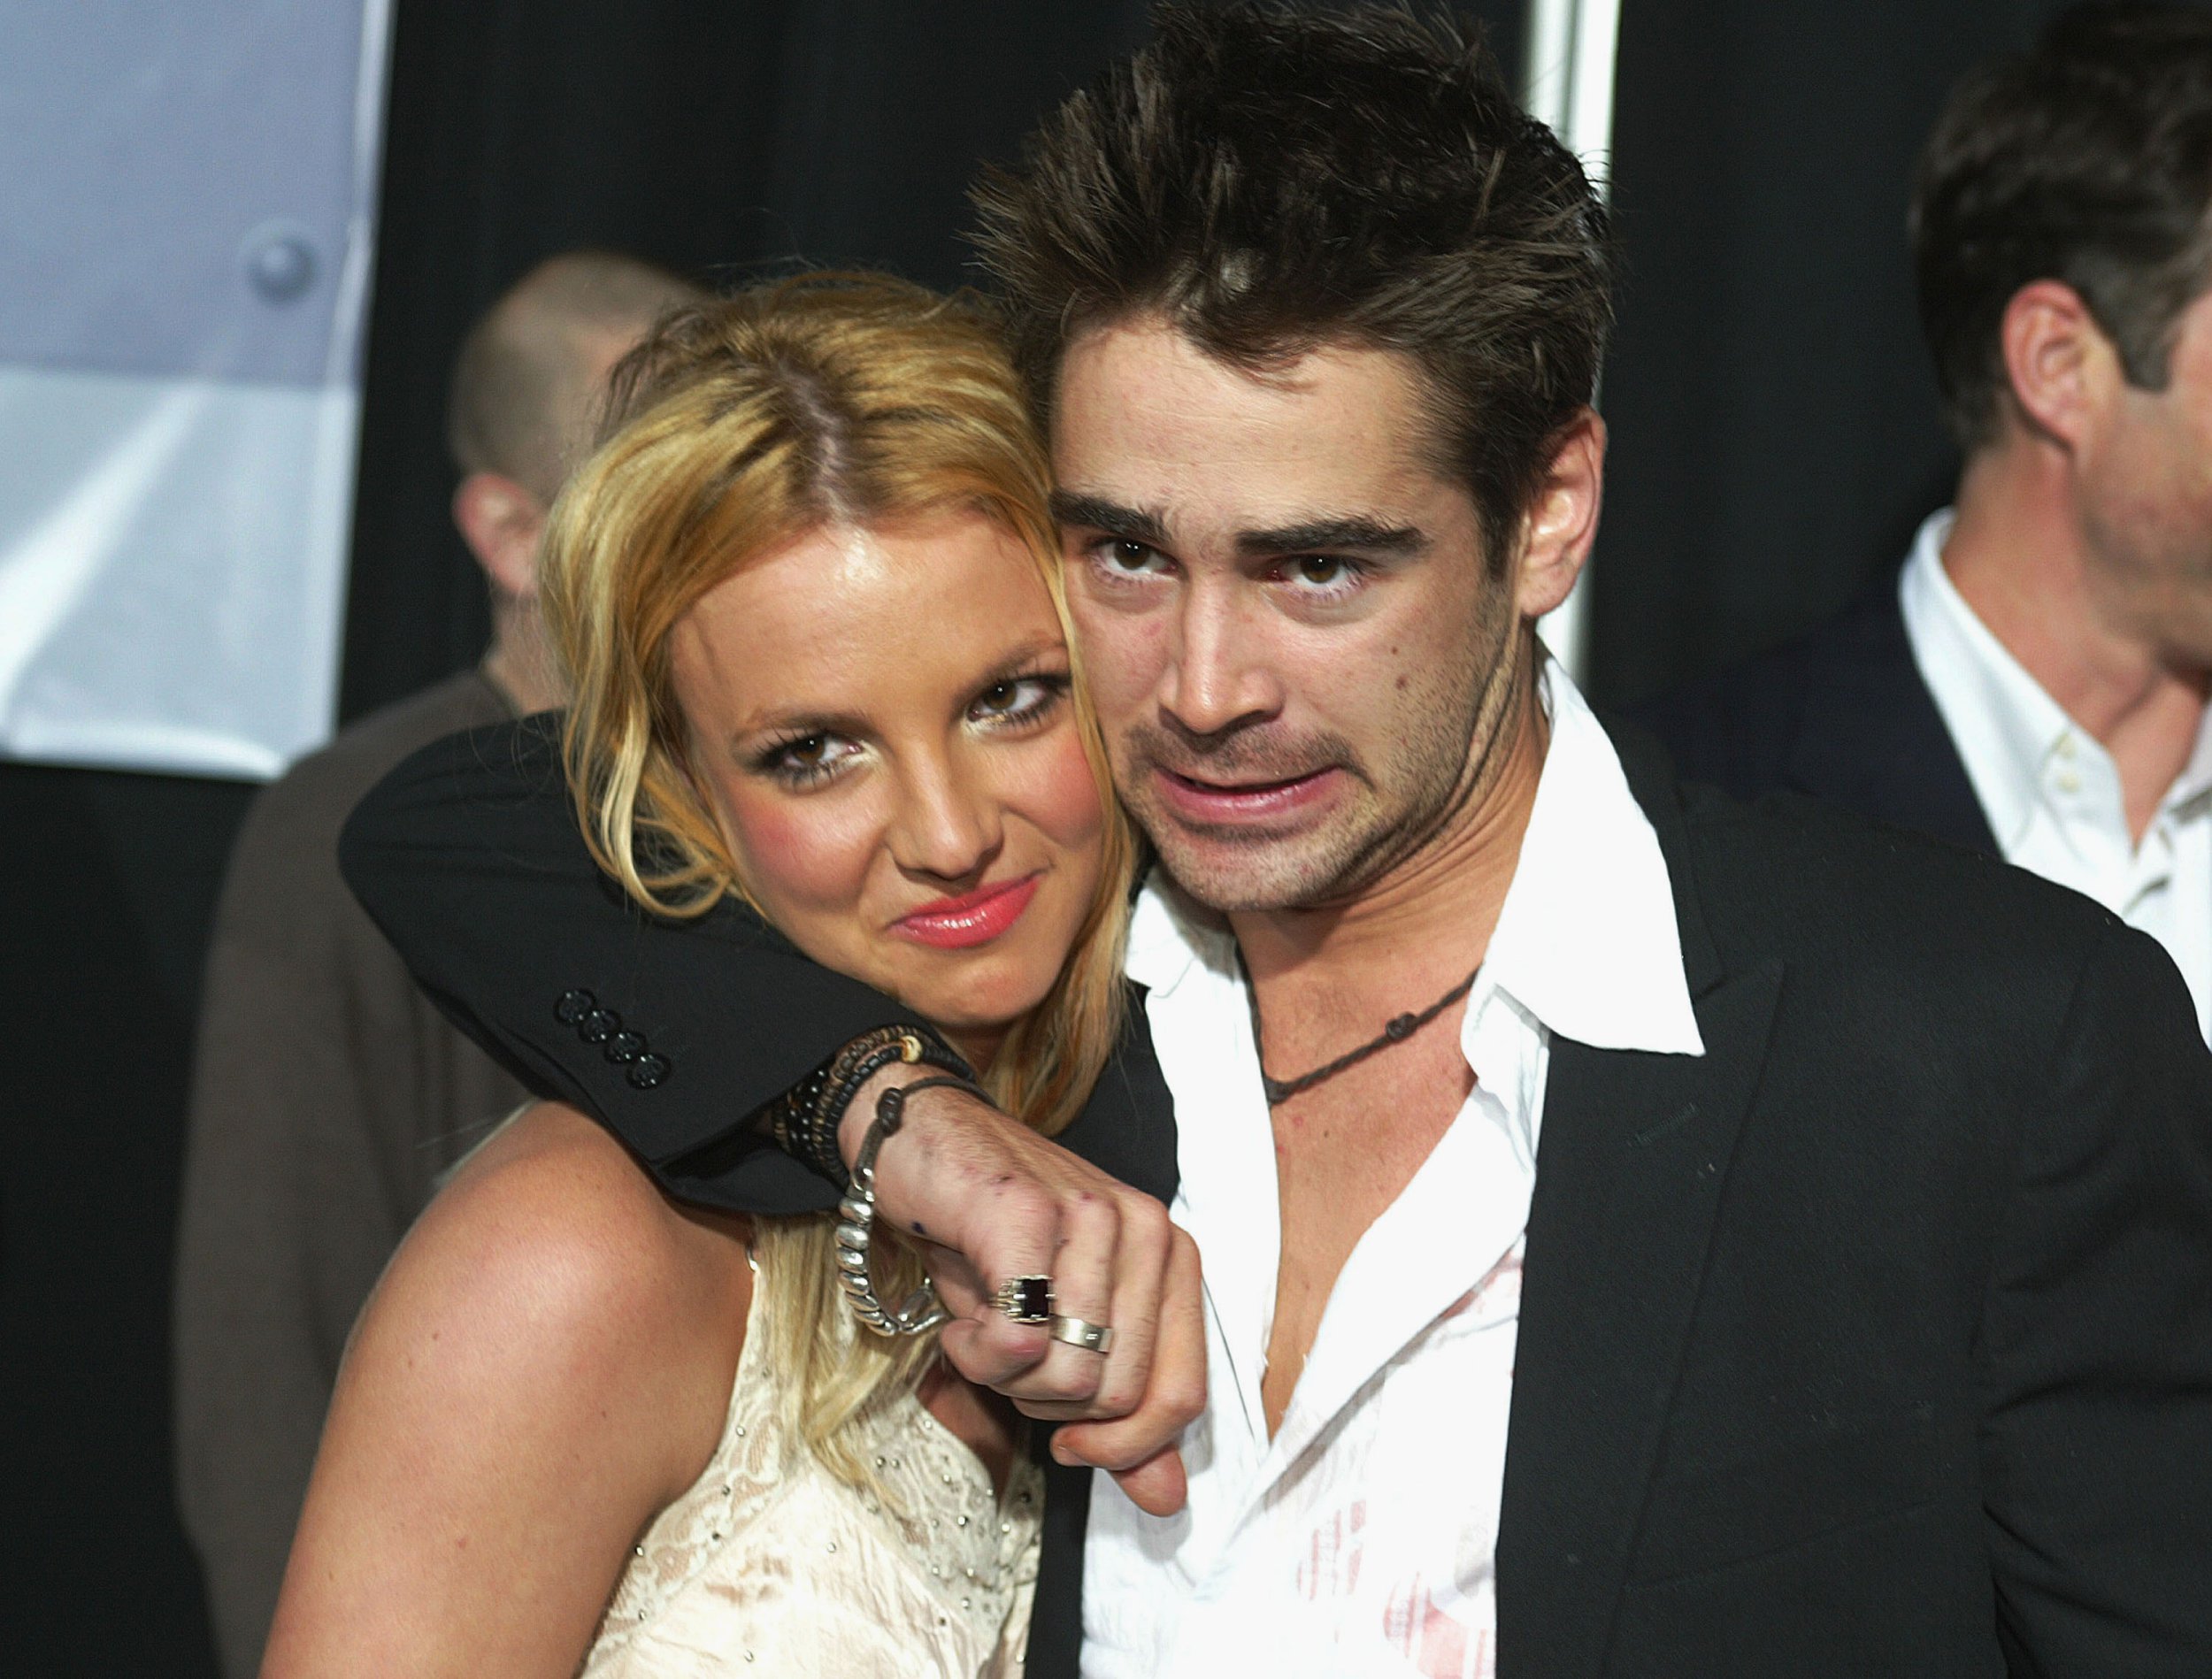 Das Paar wurde bei Colins Filmpremiere im Januar 2003 abgebildet, wo er behauptete, sie seien „nur Freunde“.